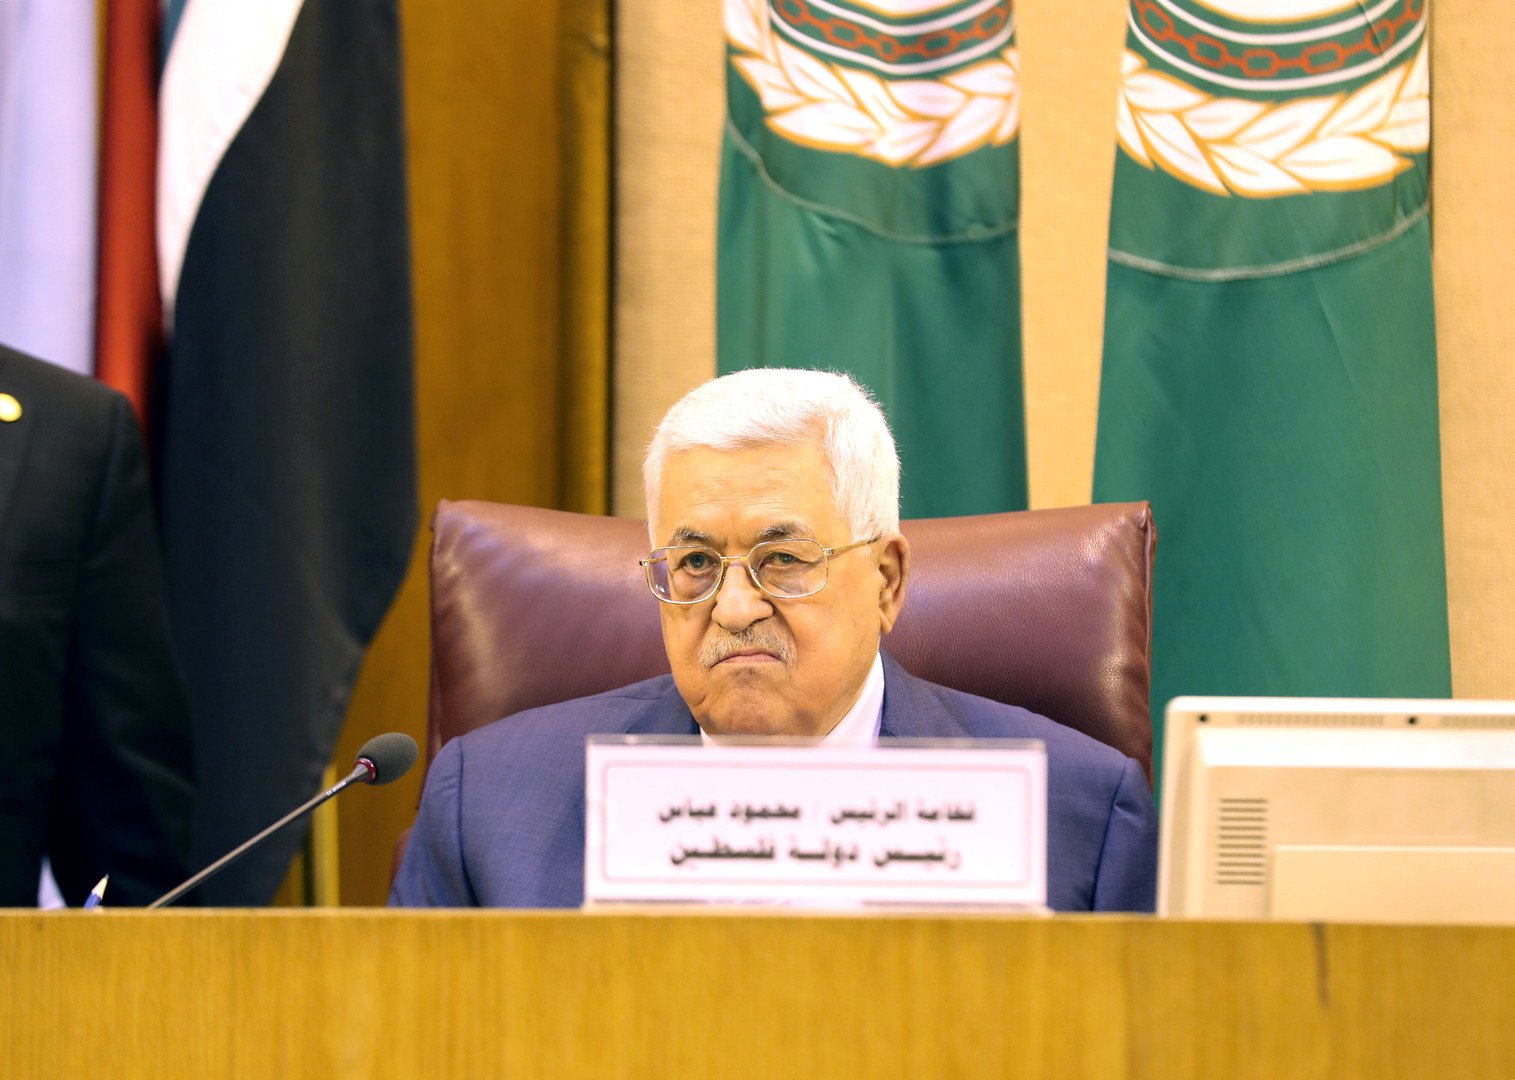 الدول العربية: لن نقبل بأي صفقة حول القضية الفلسطينية لا تنسجم مع المرجعيات